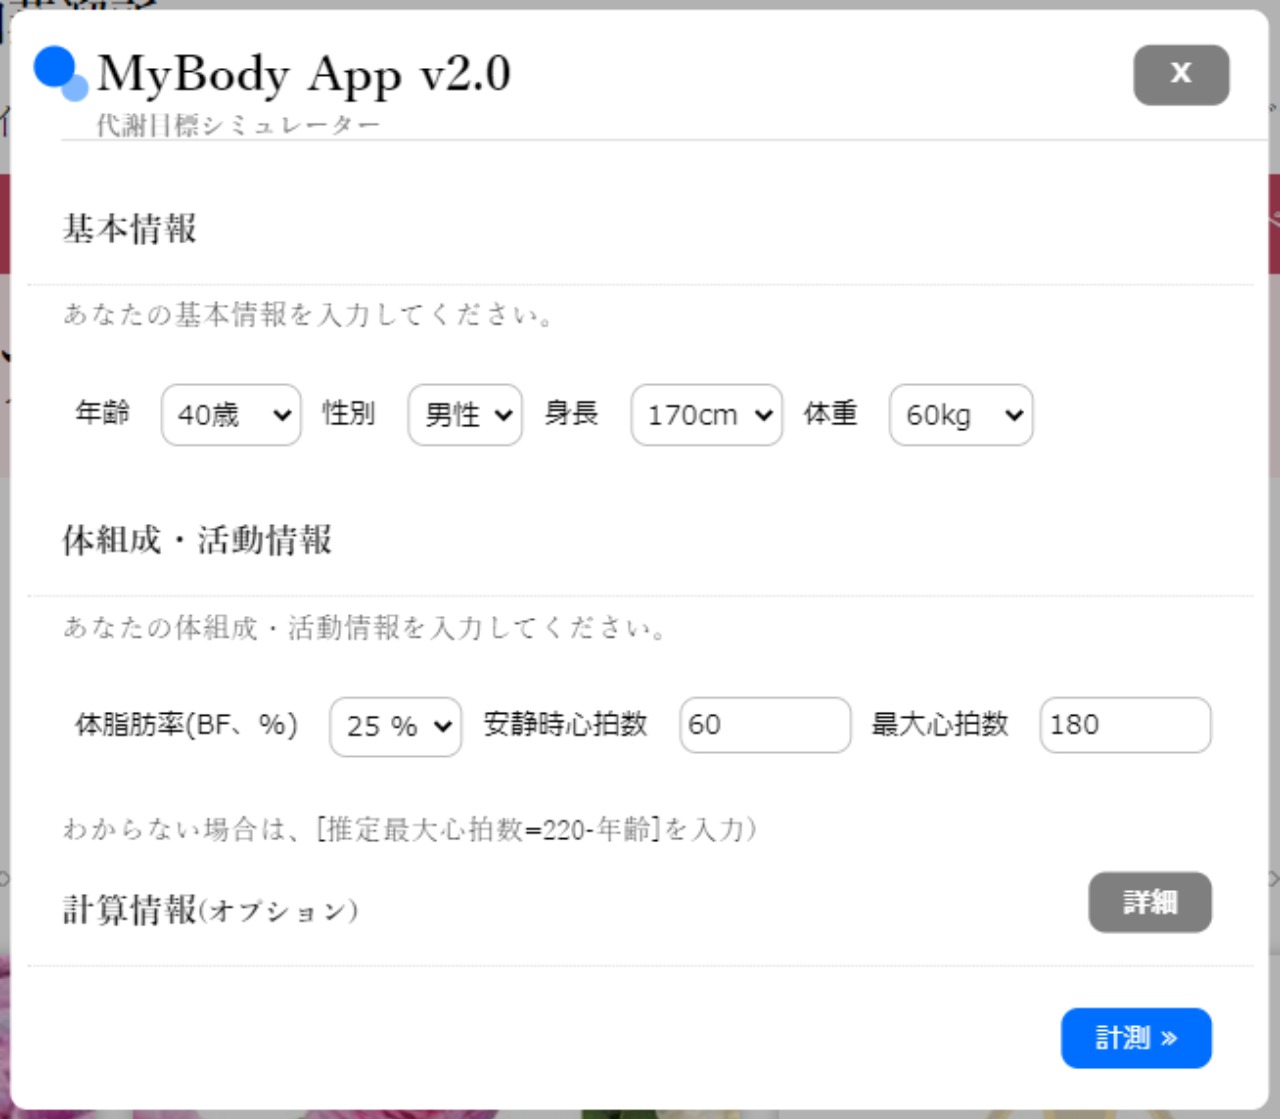  
 『MyBody』は、あなたのボディバランスを推察し、活動目標をシミュレートするWebアプリです。2.0になって、...